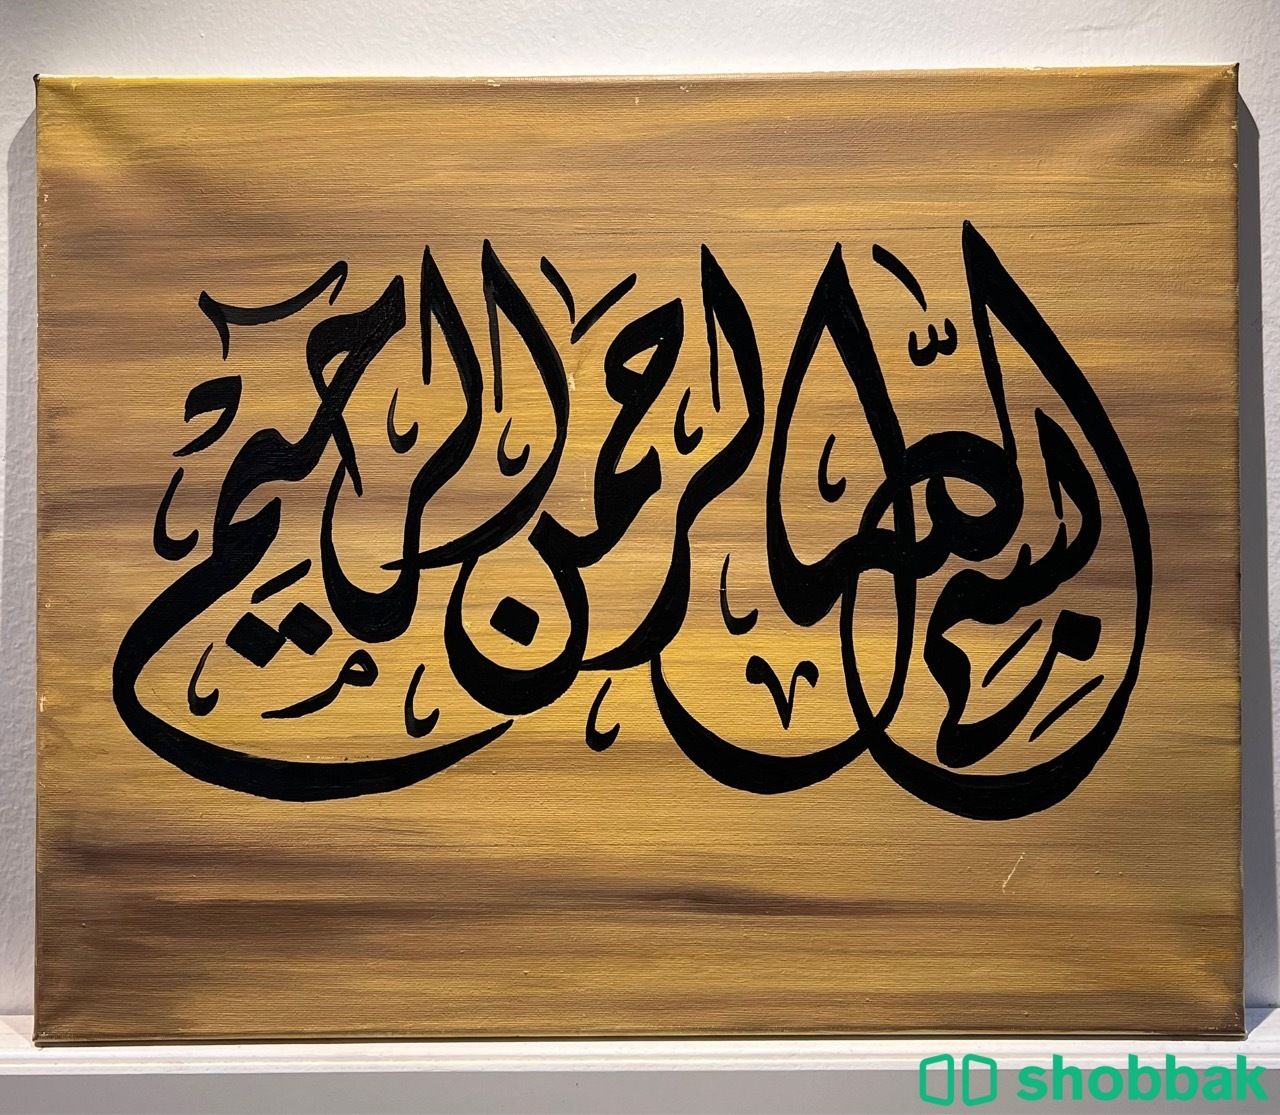 لوحة كانفس كتابة البسملة Shobbak Saudi Arabia